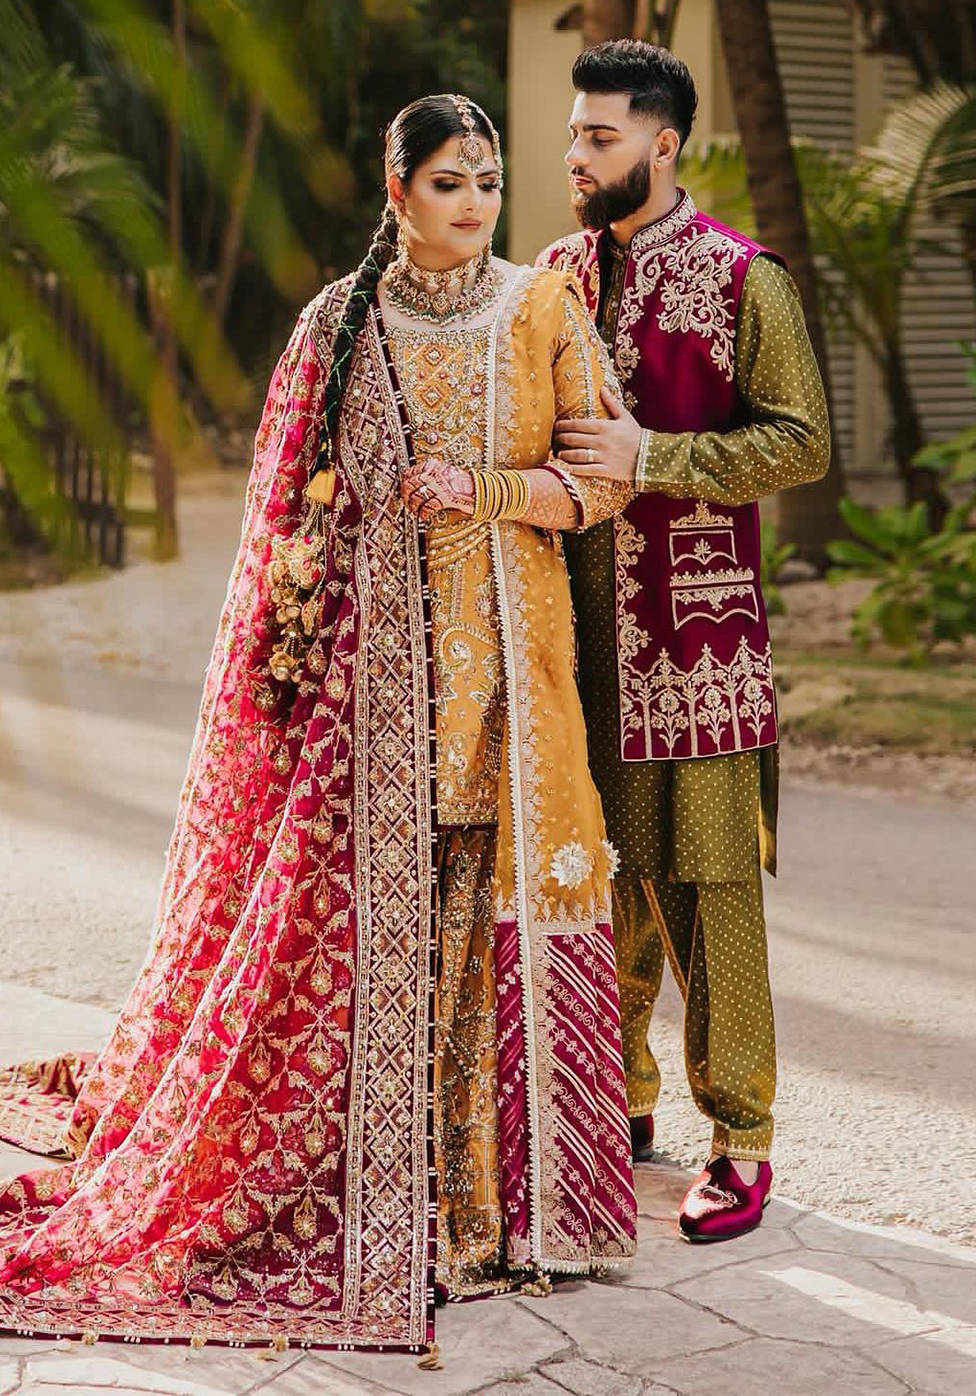 Pakistani wedding dress | Simple mehndi dresses, Wedding dresses for girls, Bridal  mehndi dresses